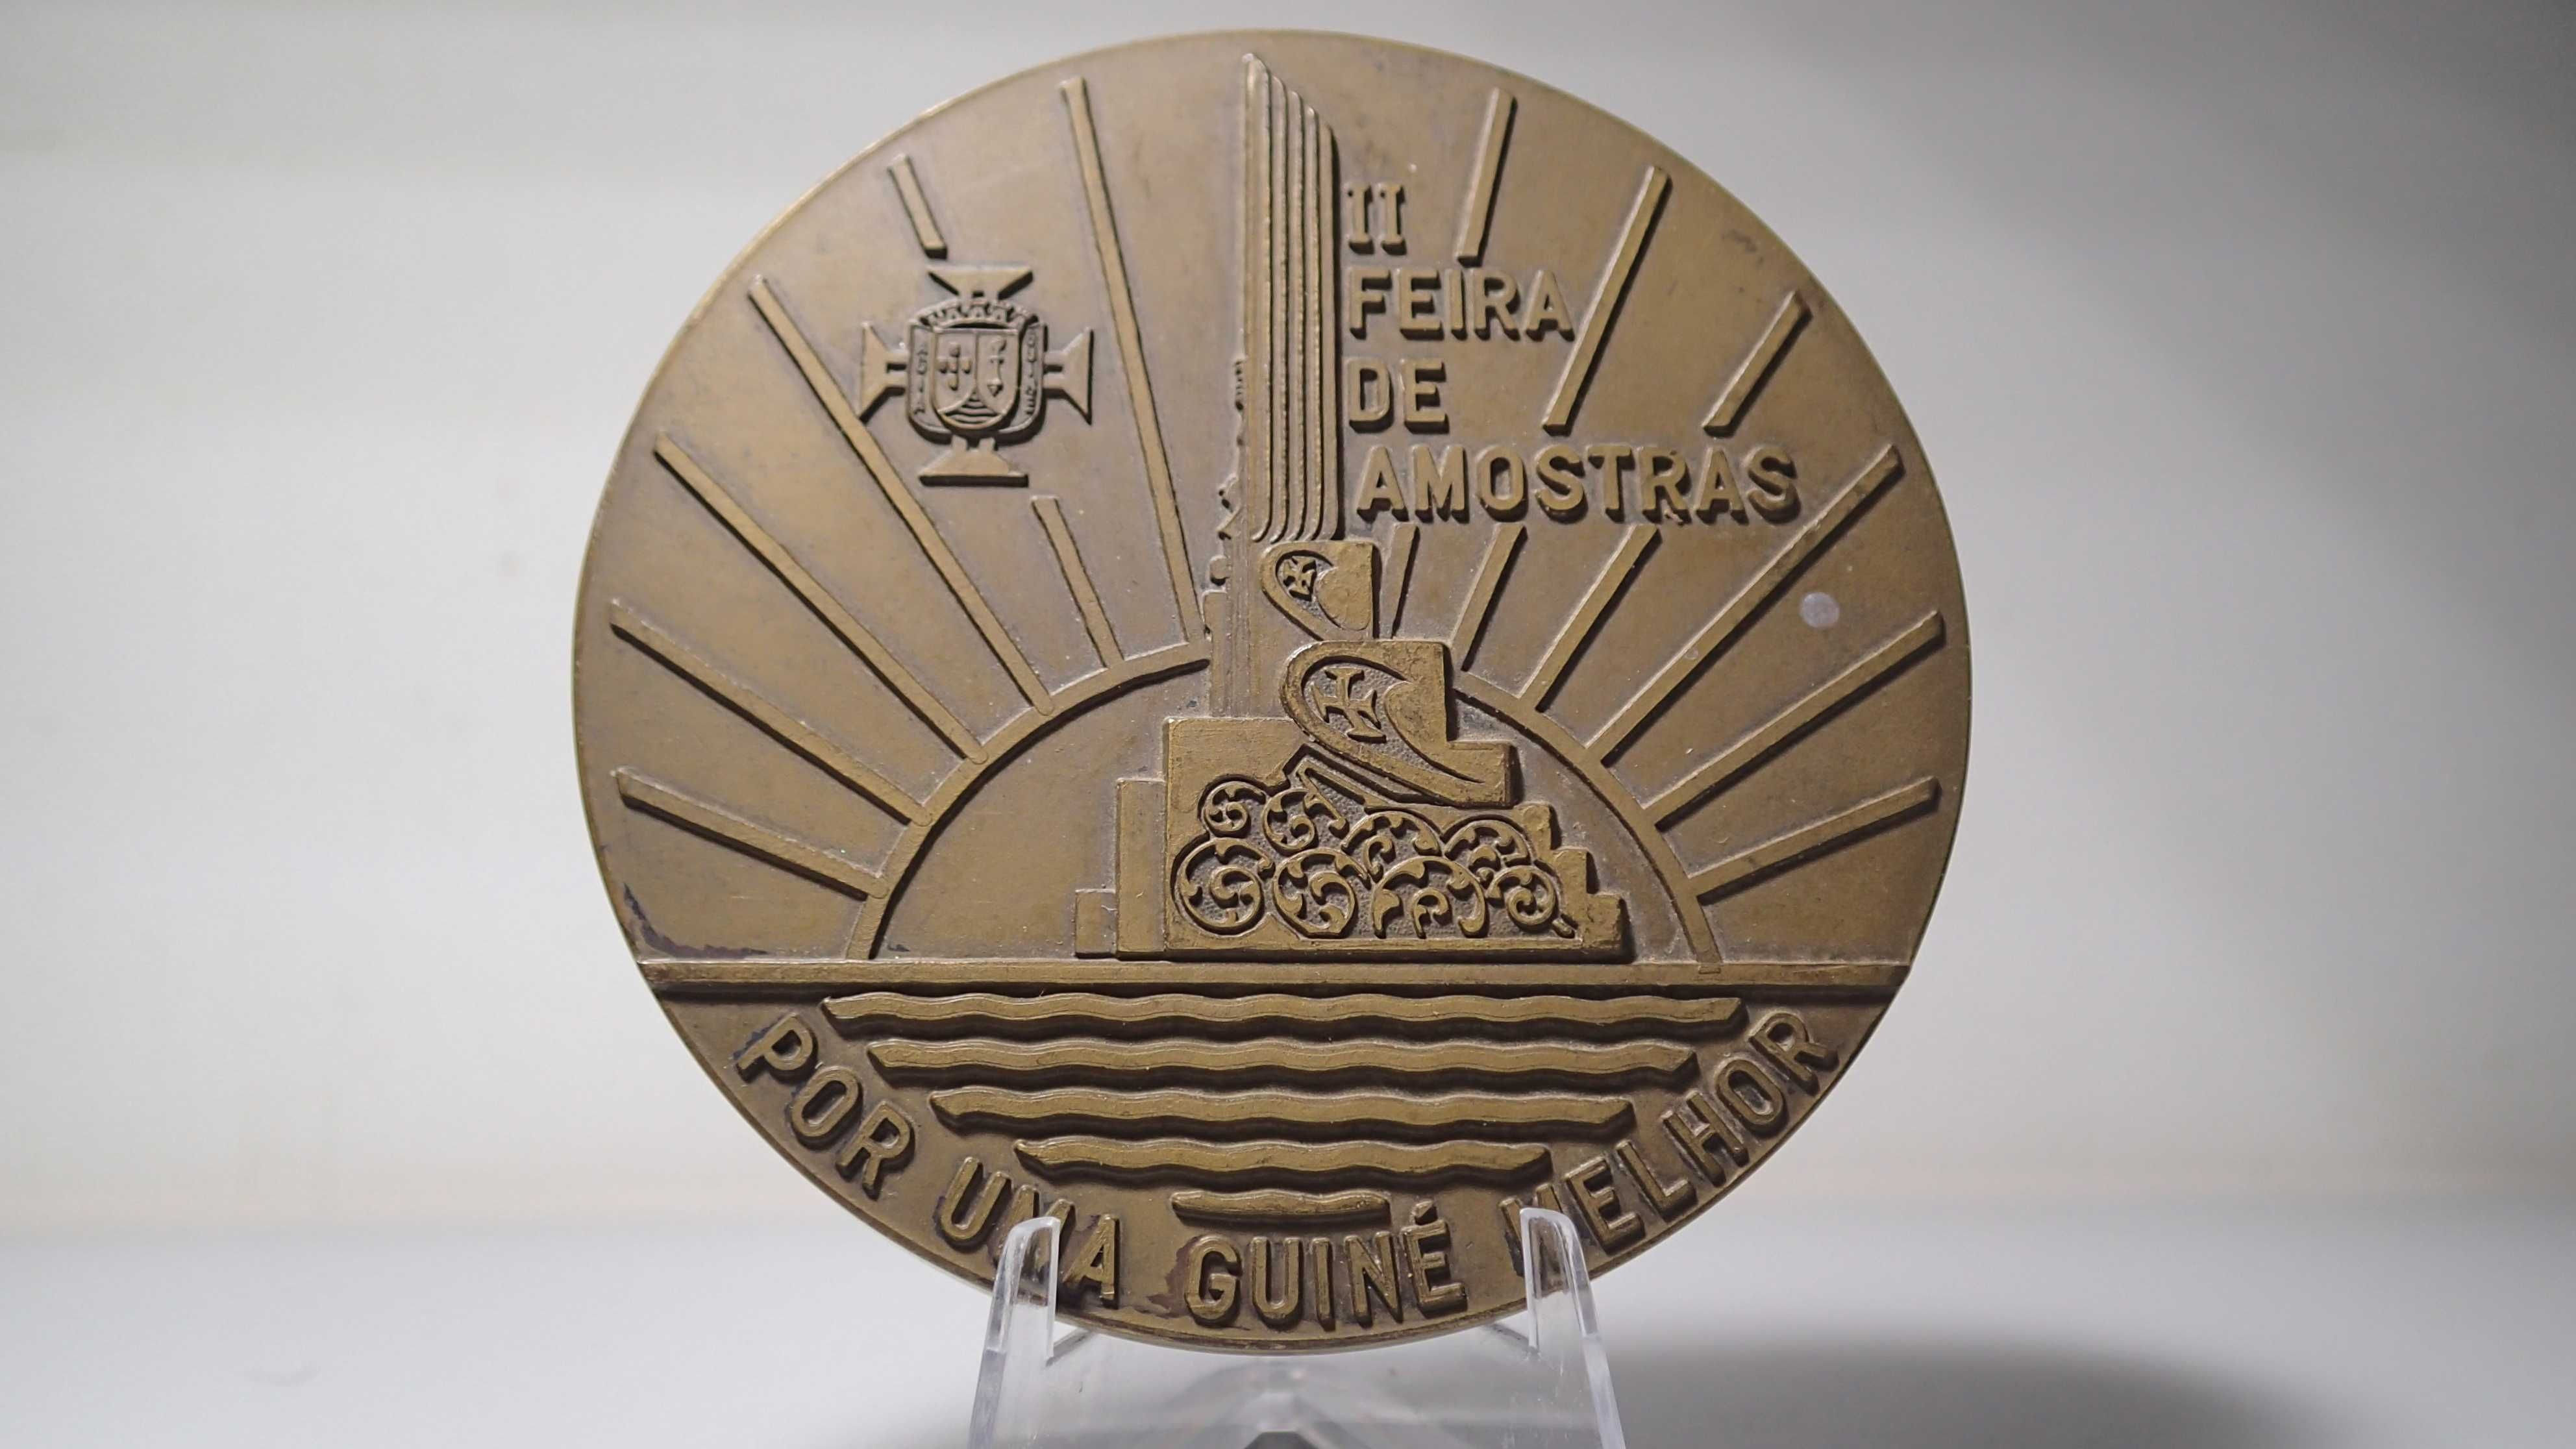 Medalha de Bronze da II Feira de Amostras